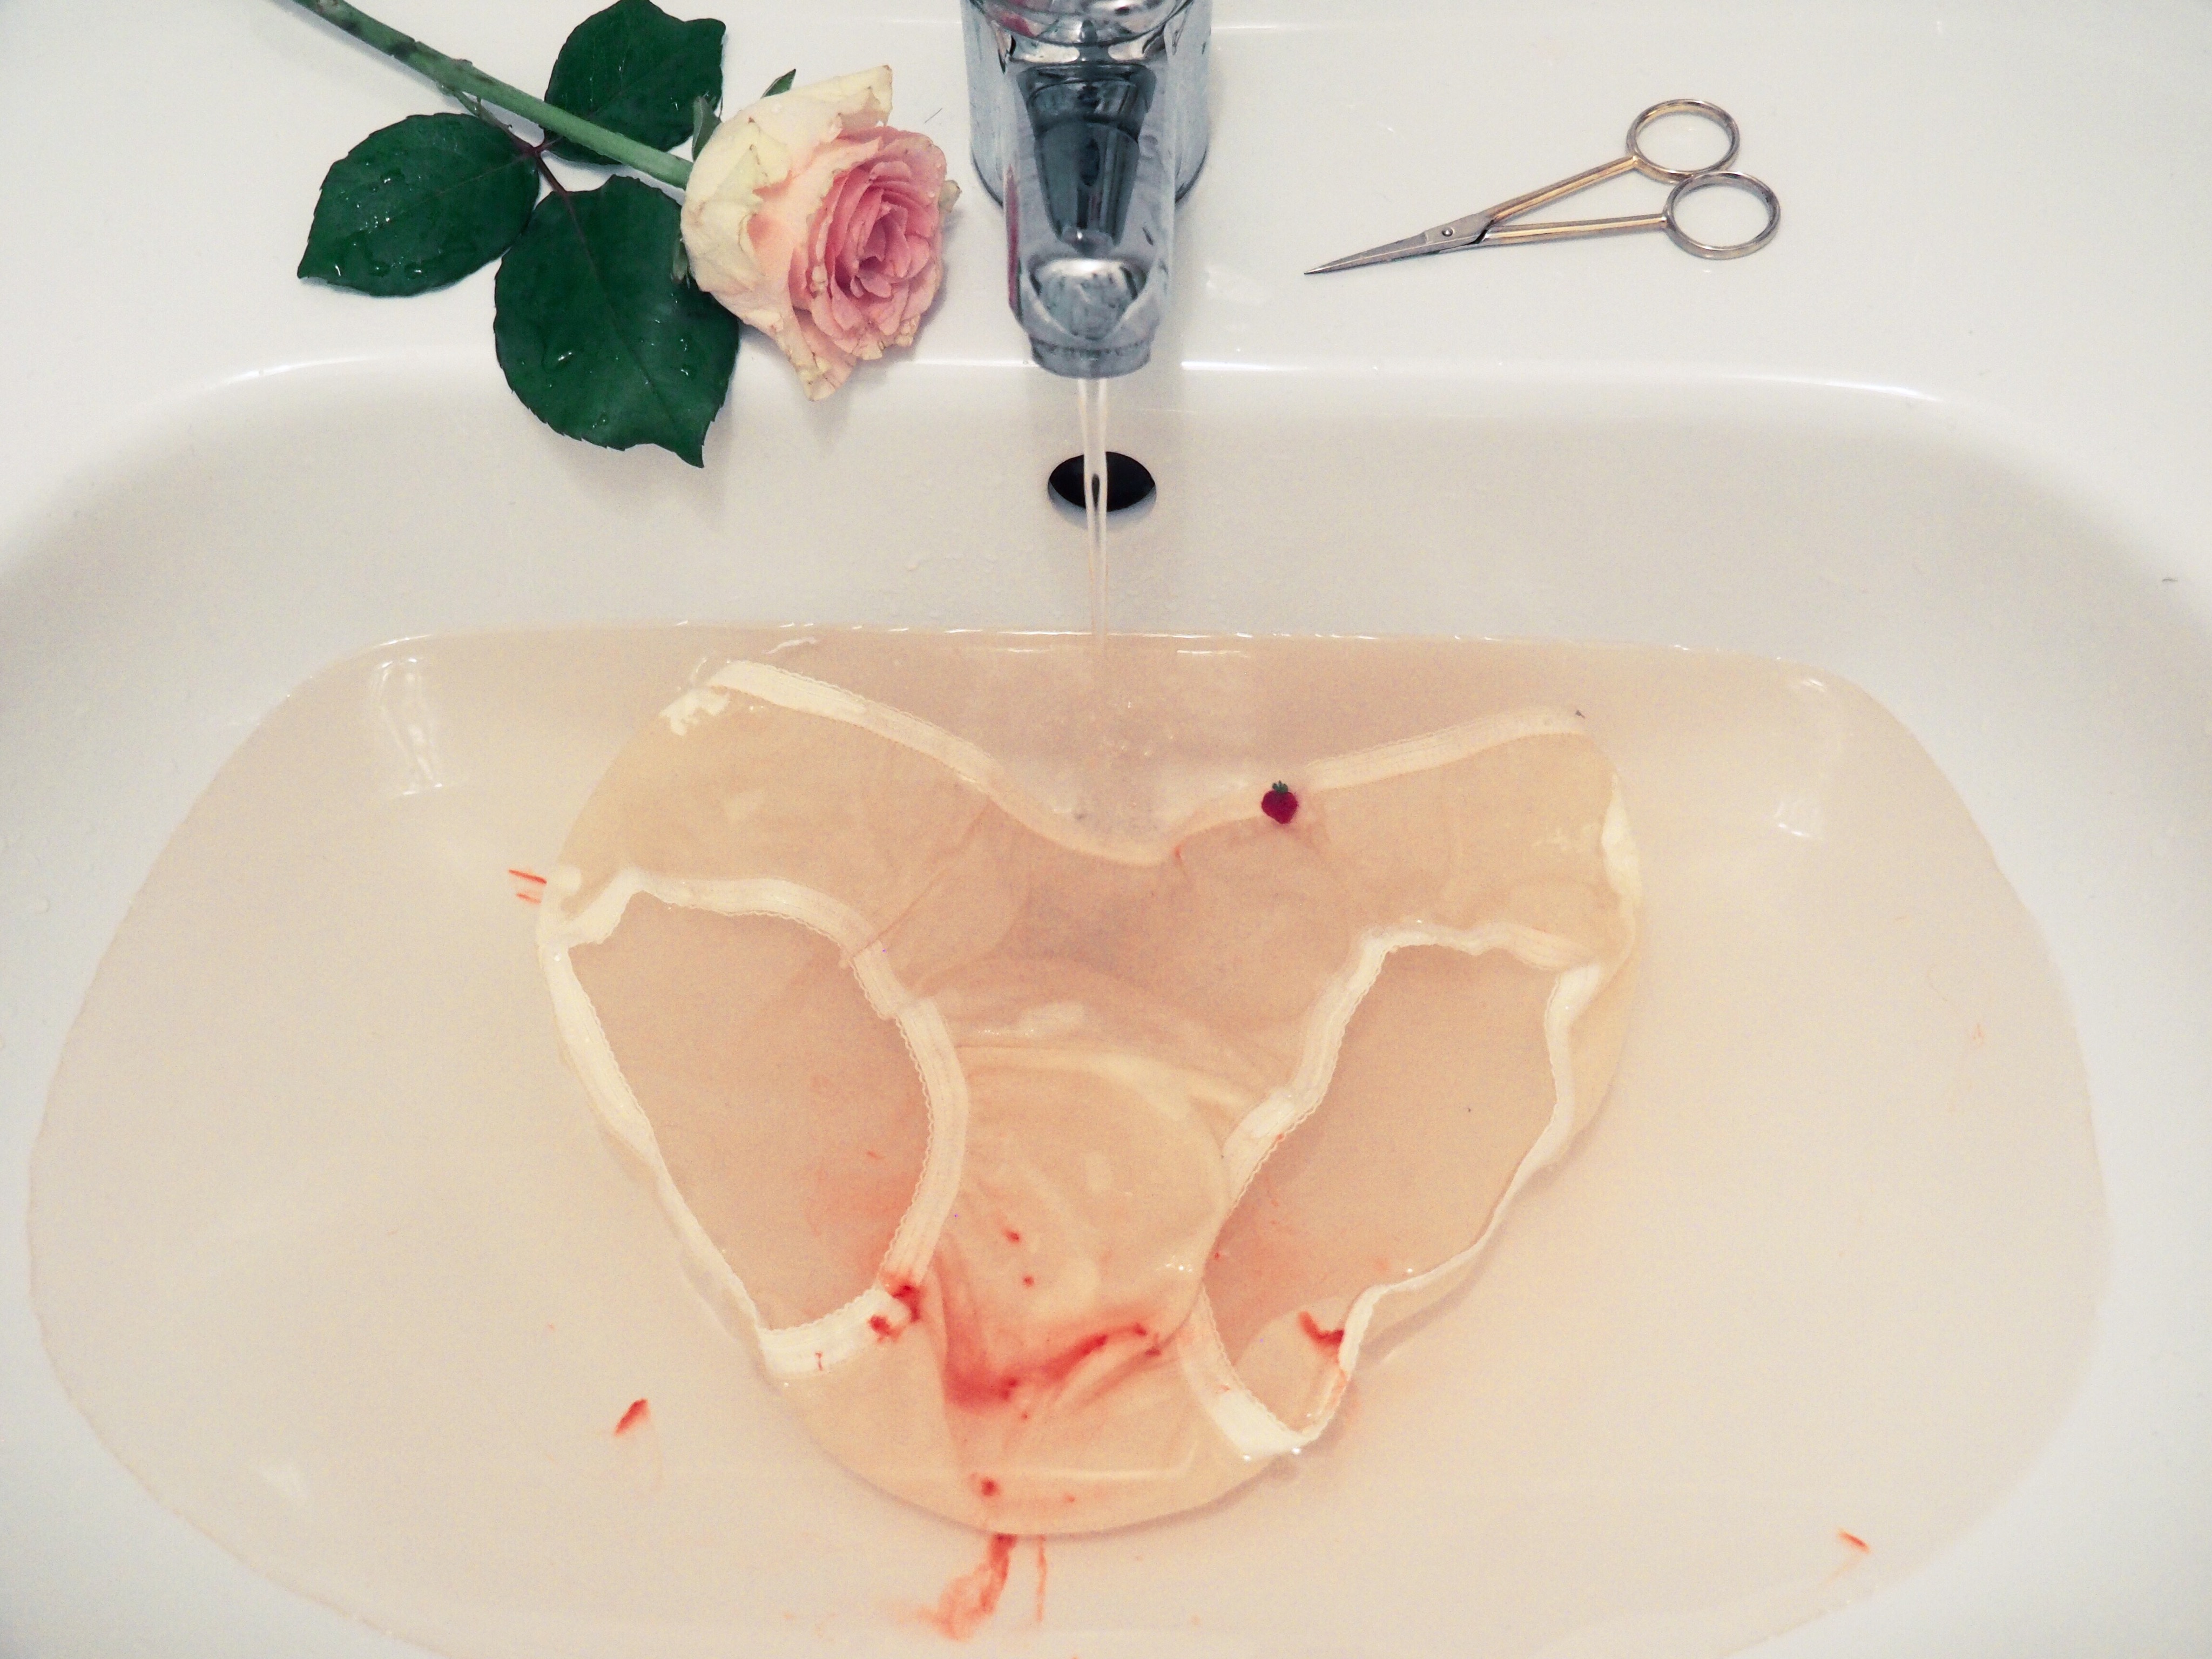 Купаться в ванной во время месячных. Кровь в раковине Эстетика.